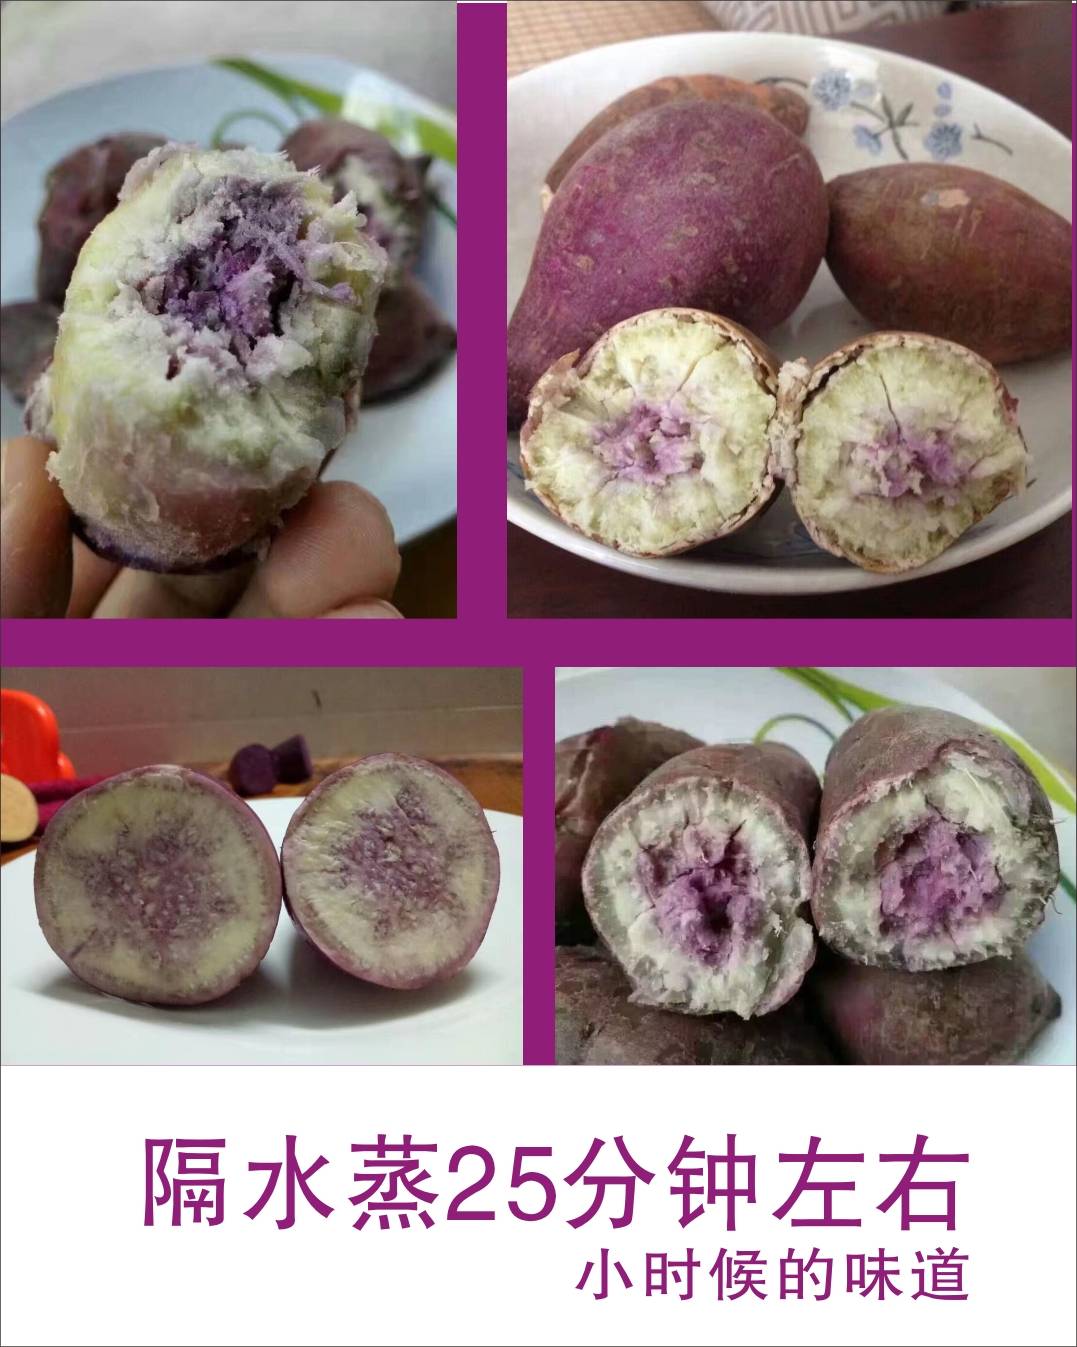 农家新鲜现挖现发冰淇淋红薯一点红紫心番薯新鲜板栗粉香糯地瓜